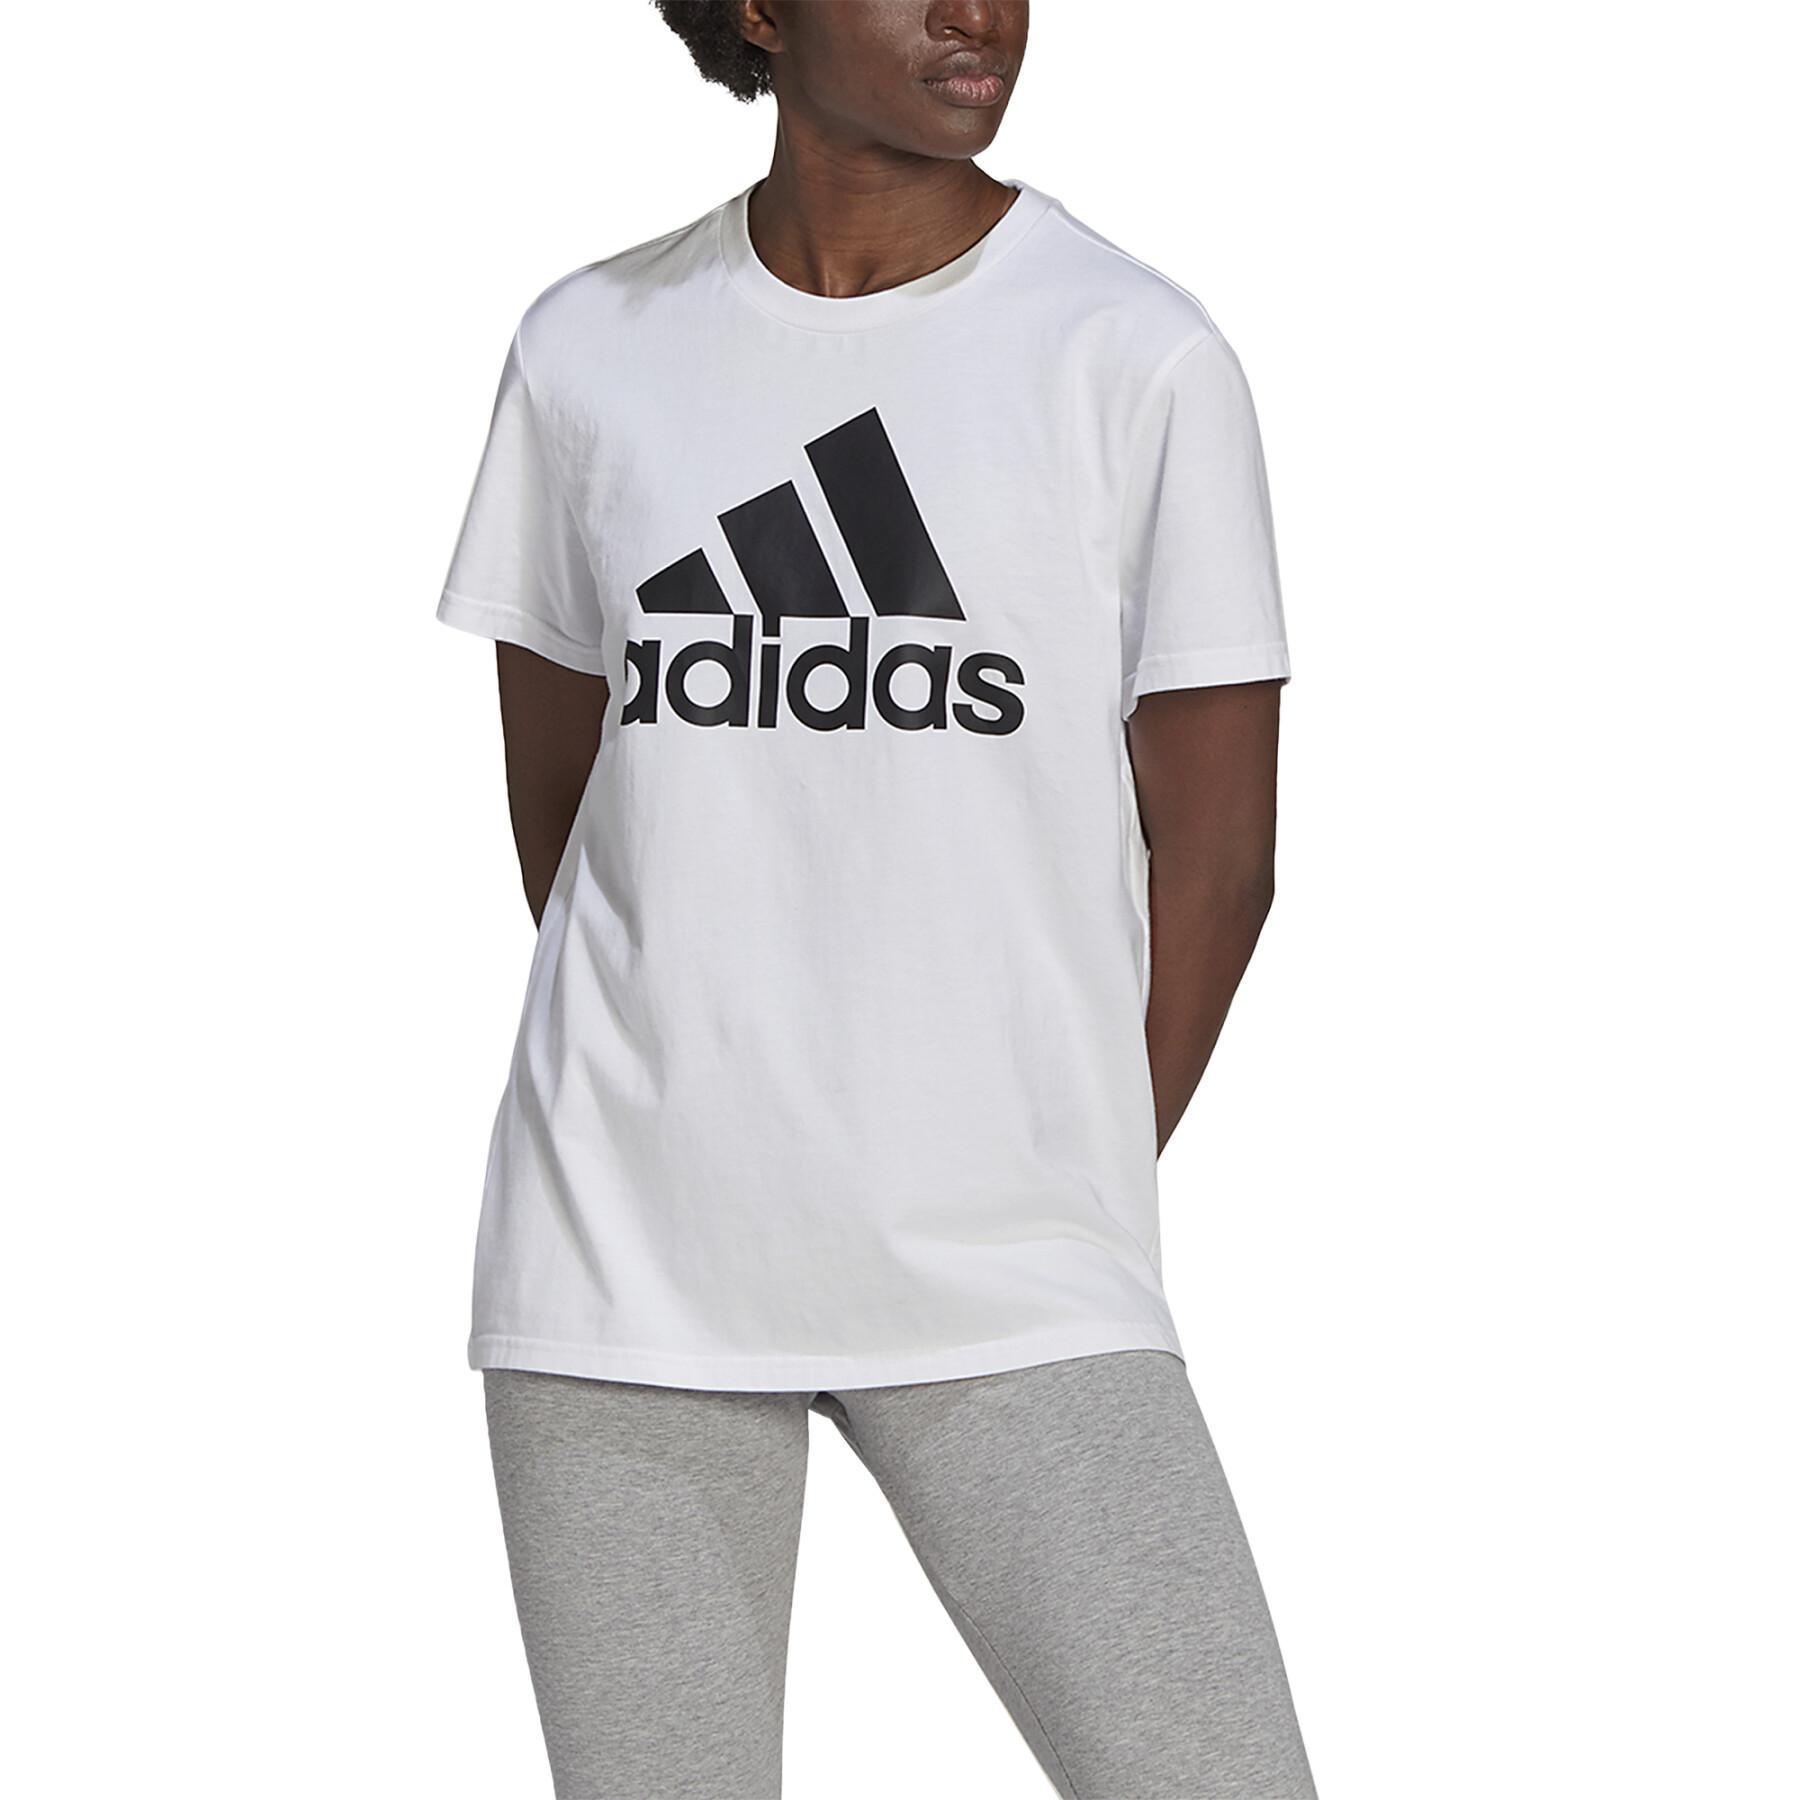 Women's T-shirt adidas Essentials Logo Boyfriend